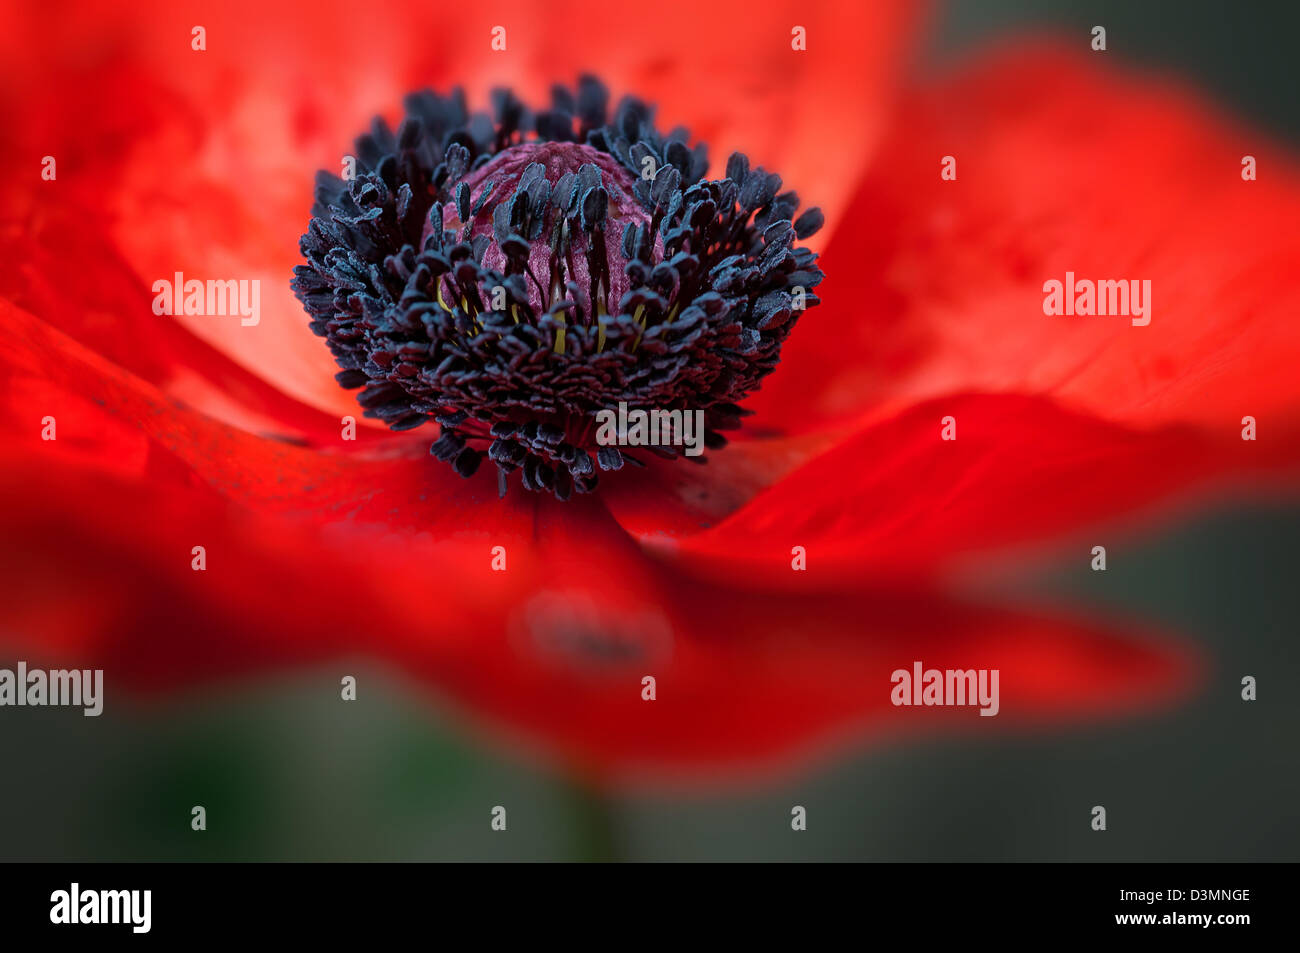 El wildflower amapola roja grande de macro de cerca gran símbolo veterano de guerra Foto de stock